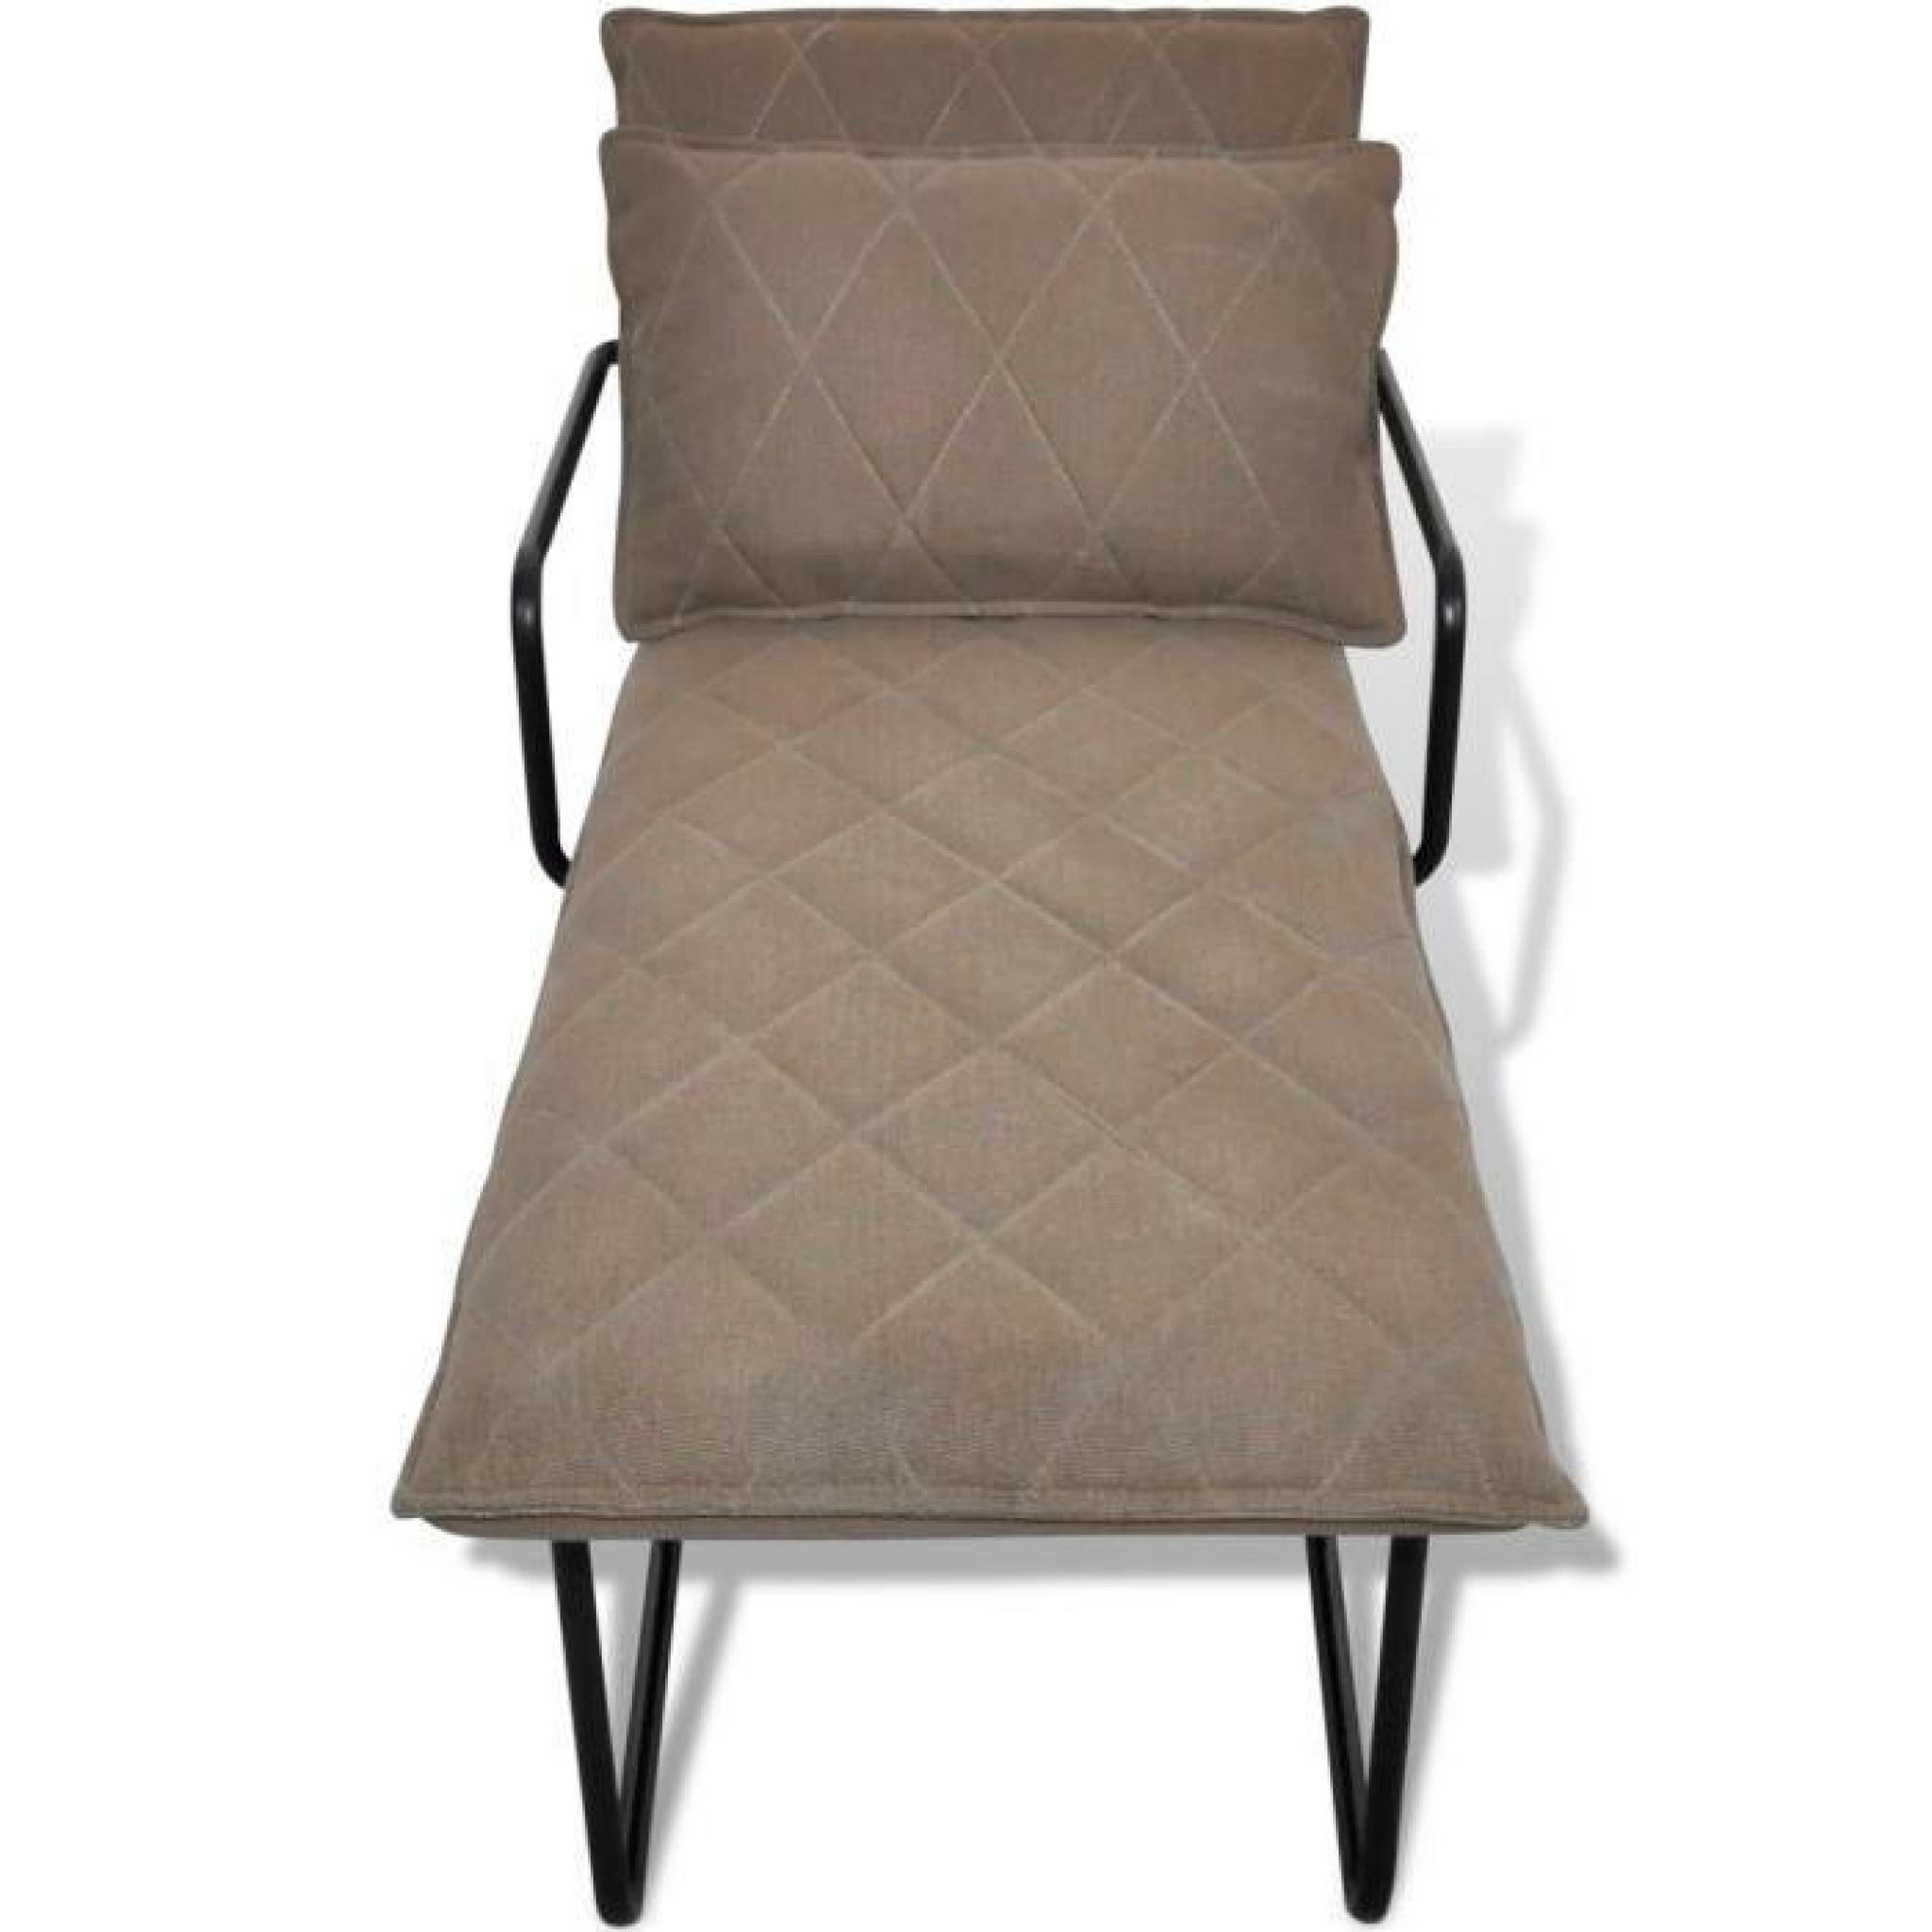 Cette chaise longue de haute qualité, avec un design exquis, va certainement apporter une touche élégante. Vous pouvez vous allon... pas cher